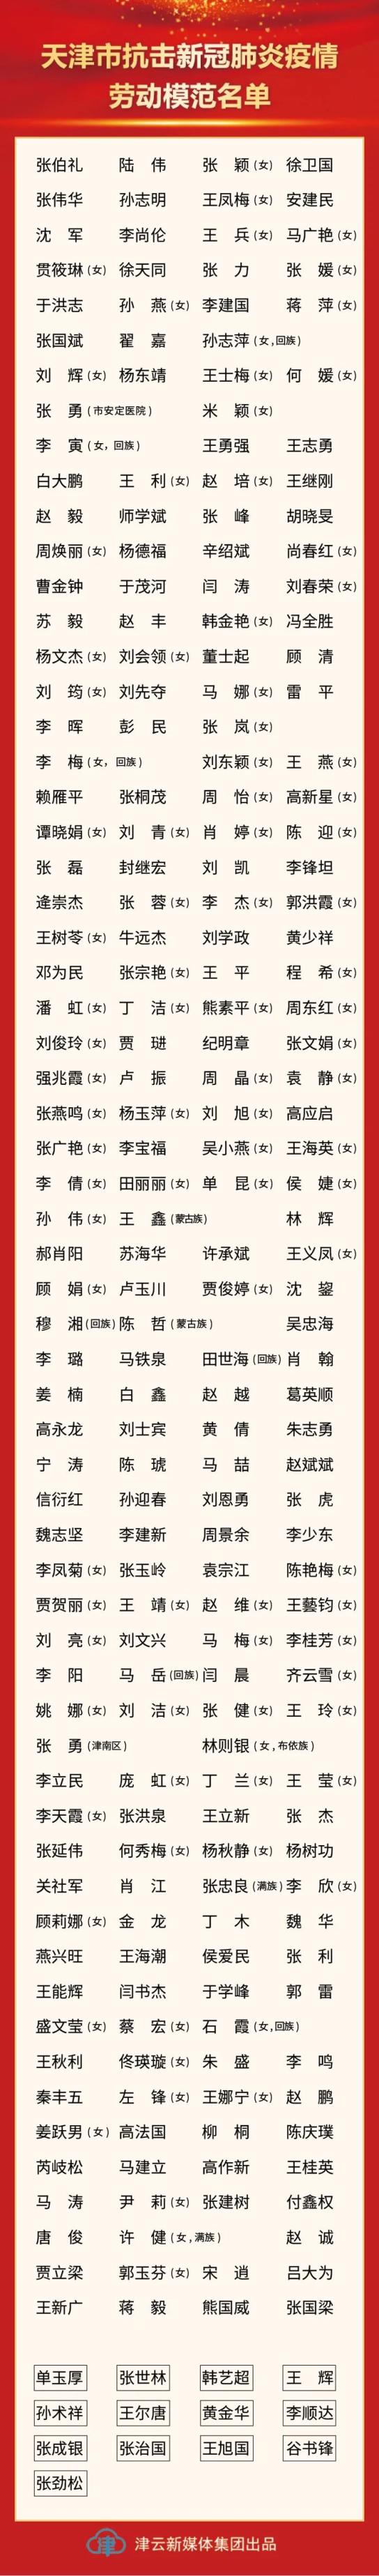 天津市抗擊新冠肺炎疫情表彰大會